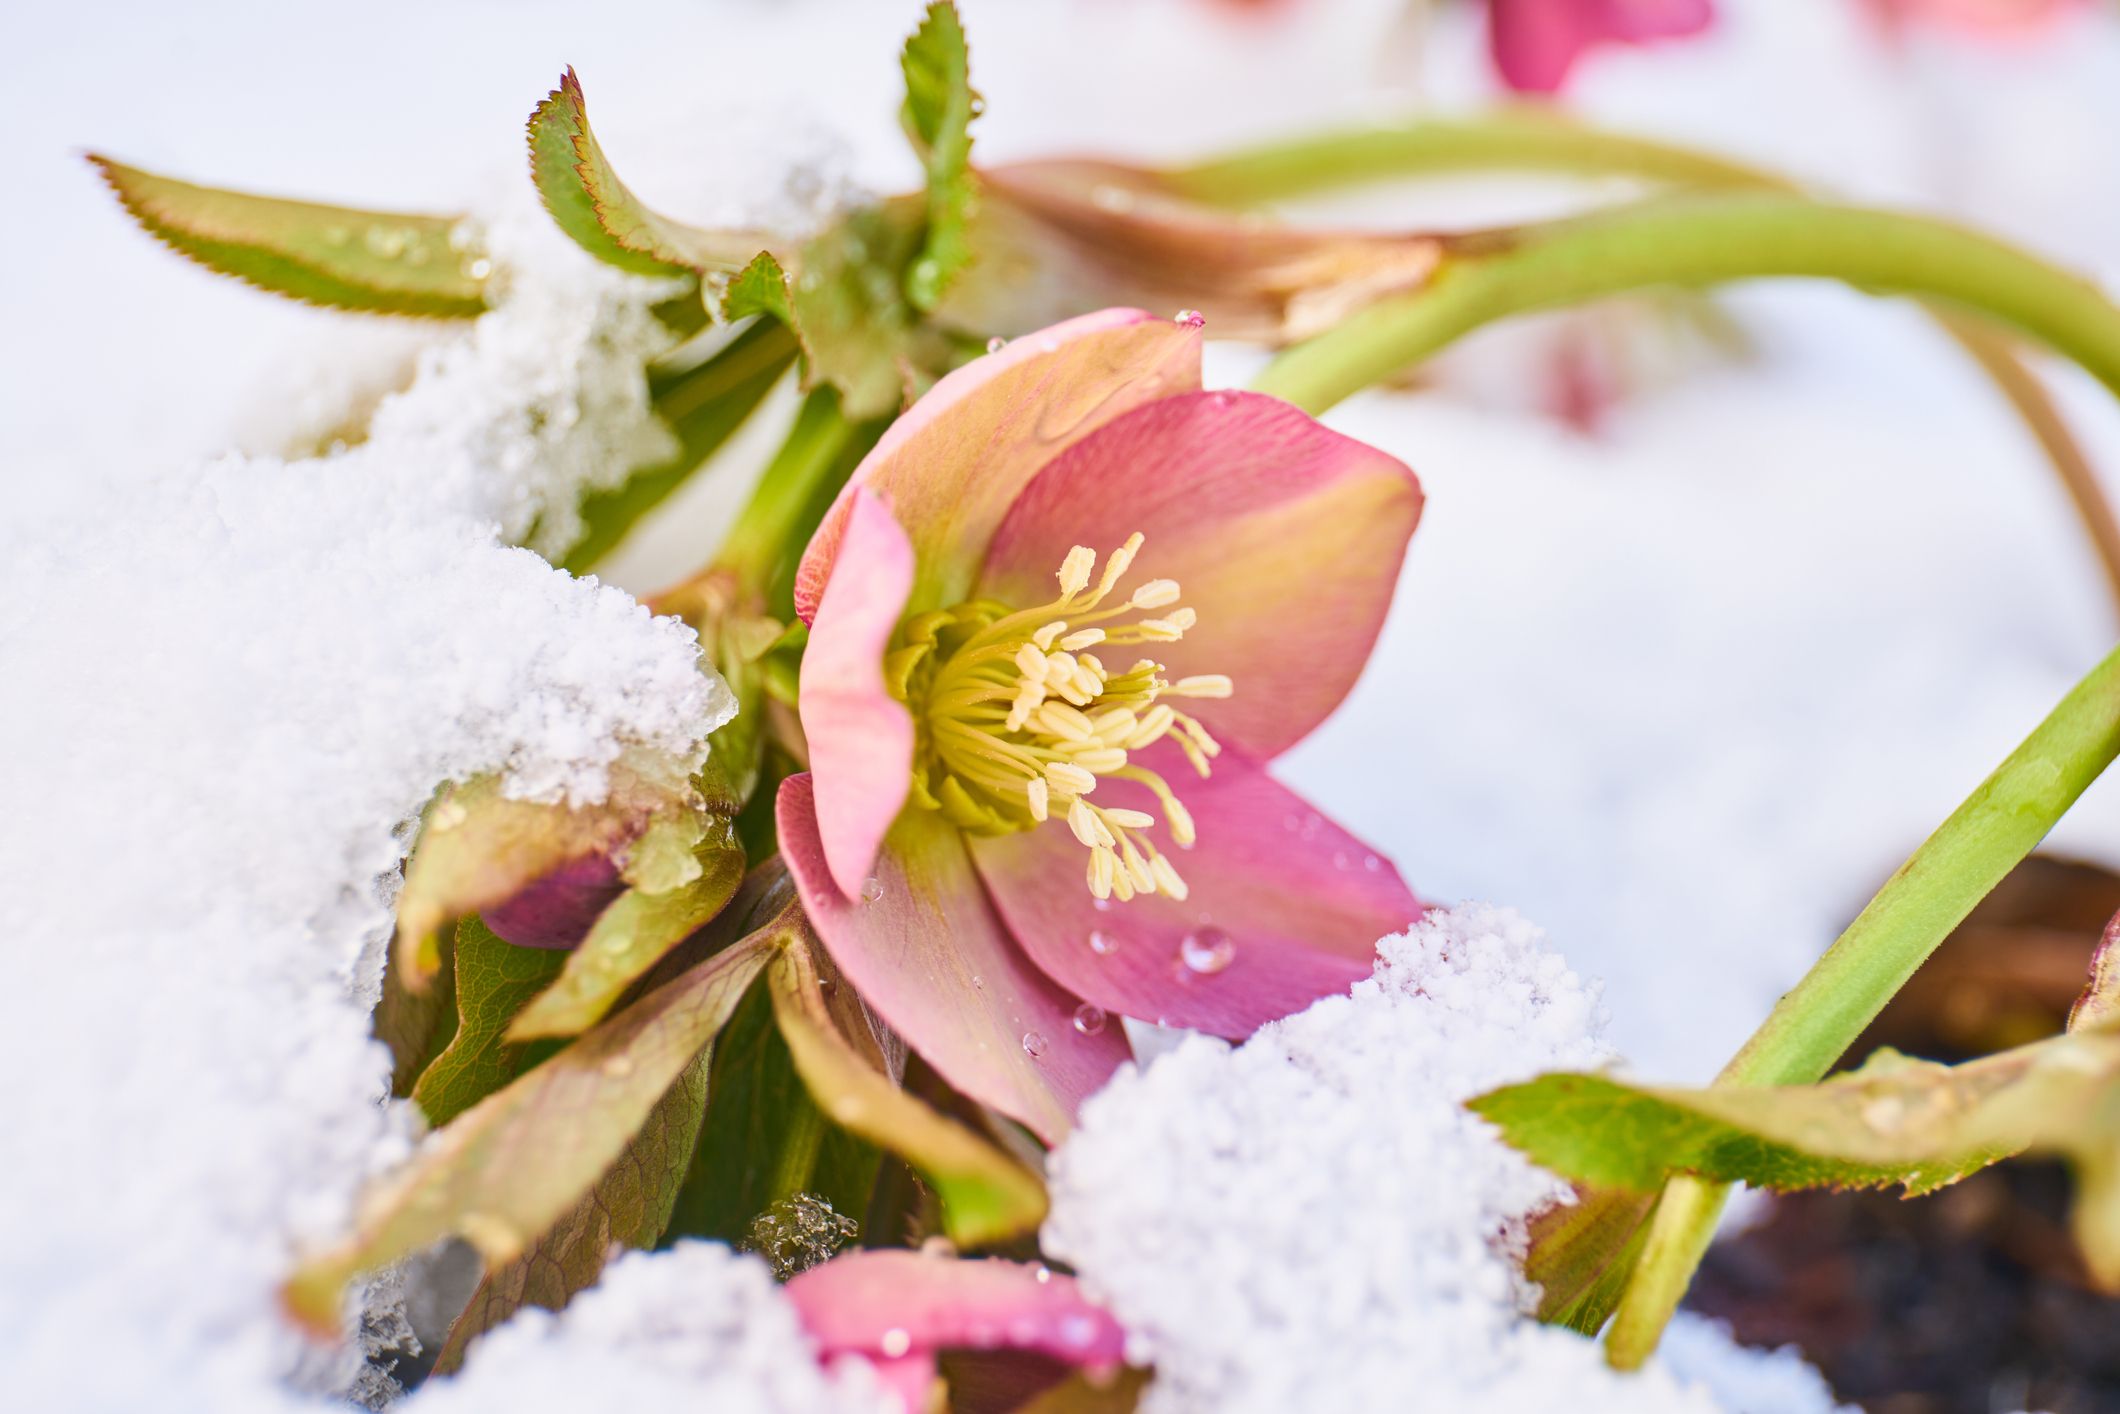 20 Best Winter Flowers - Flowers That Bloom in Winter